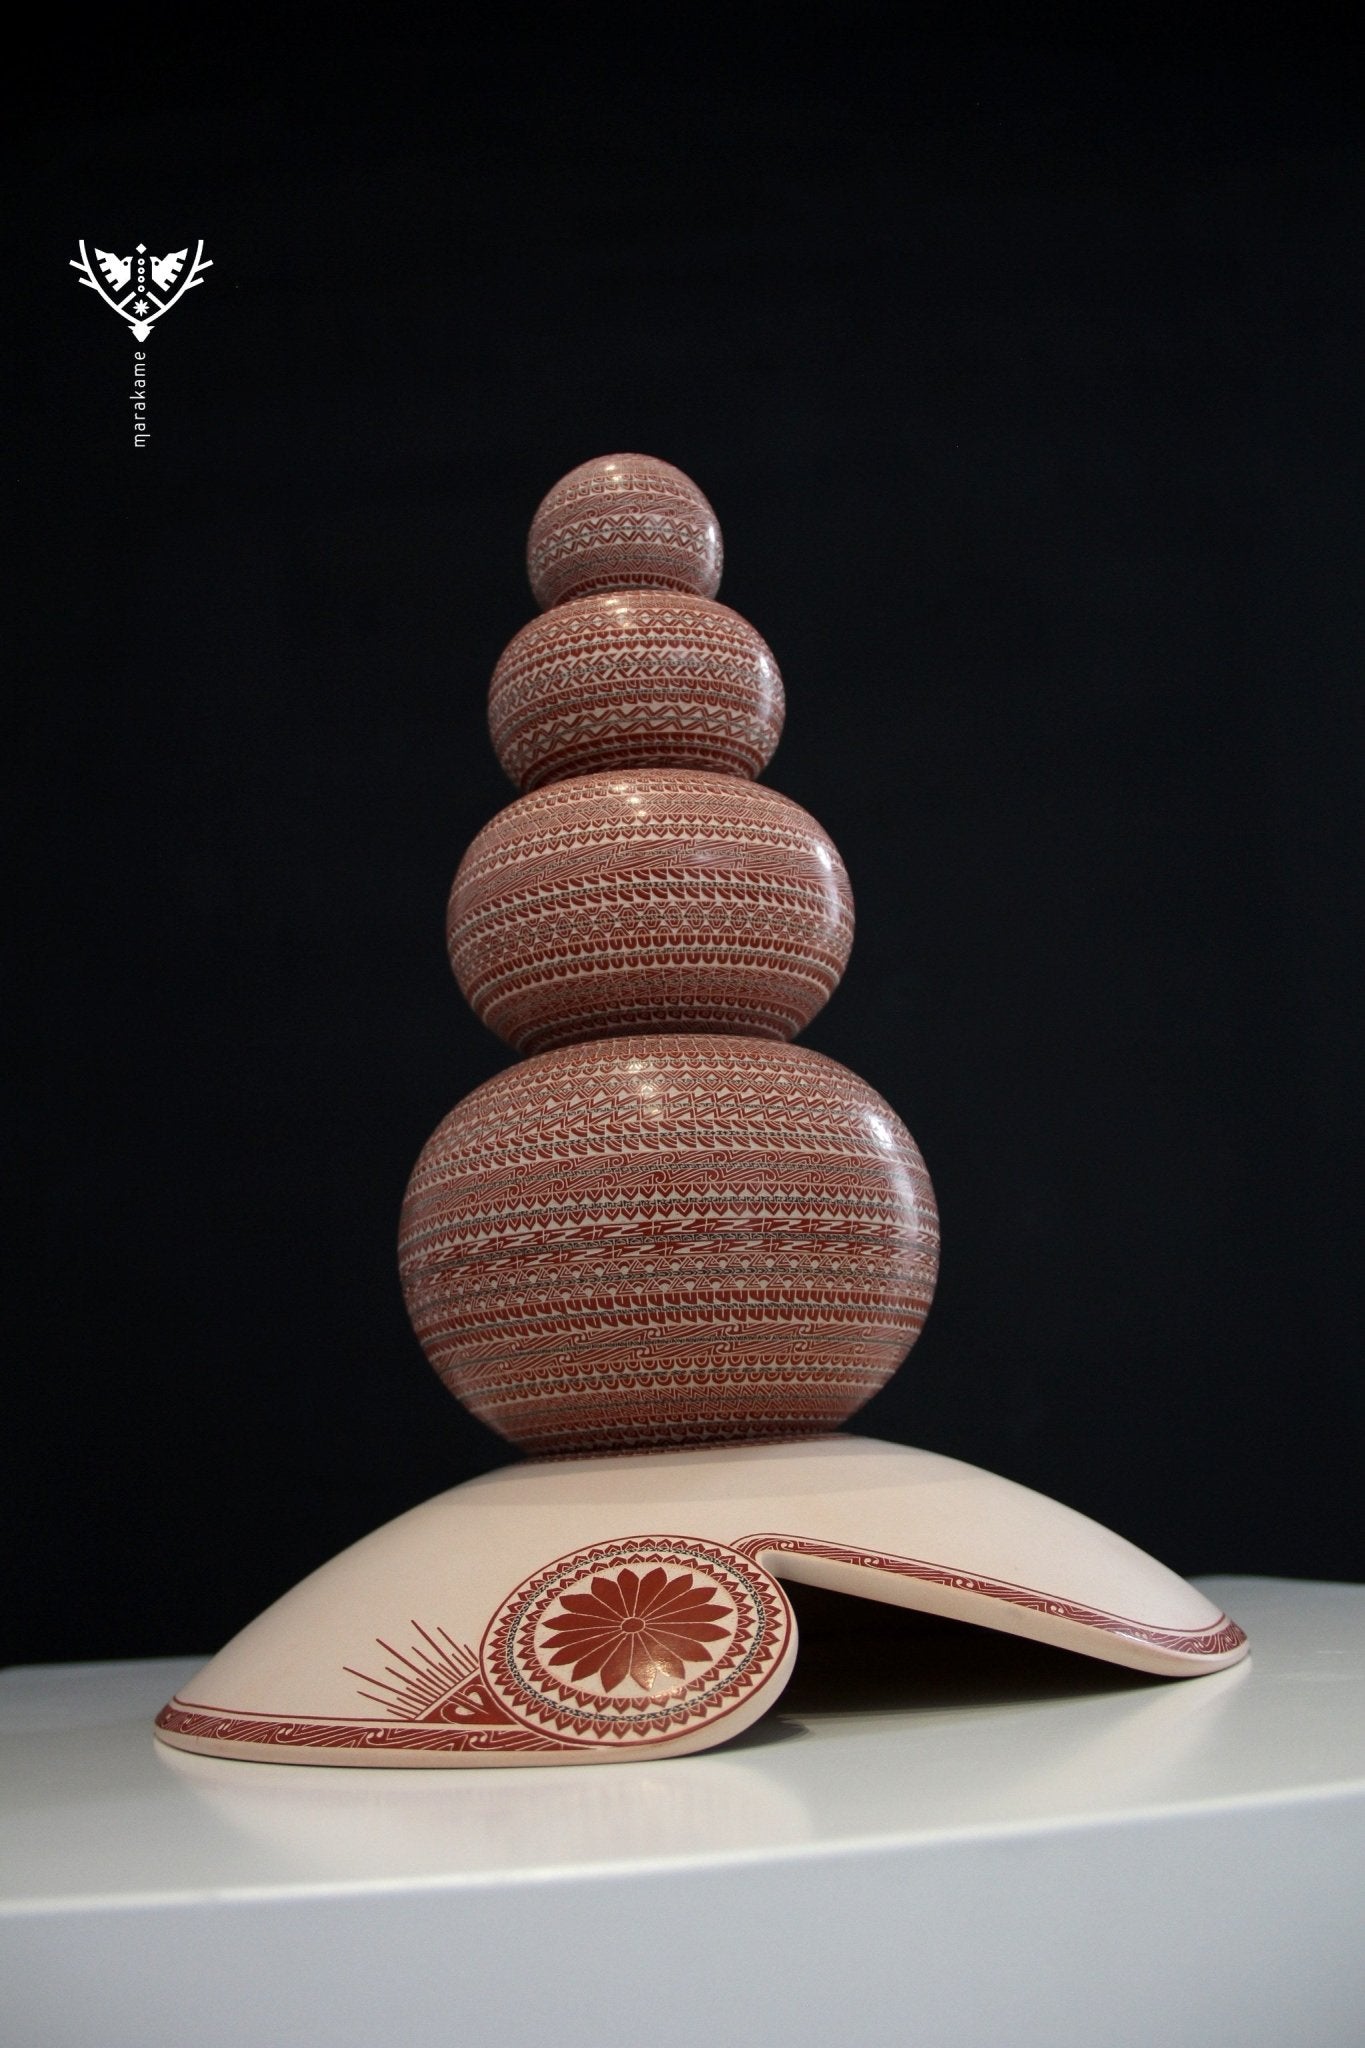 Mata Ortiz Keramik - Erster Platz in Sgraffito - Apacheta - Huichol Art - Marakame